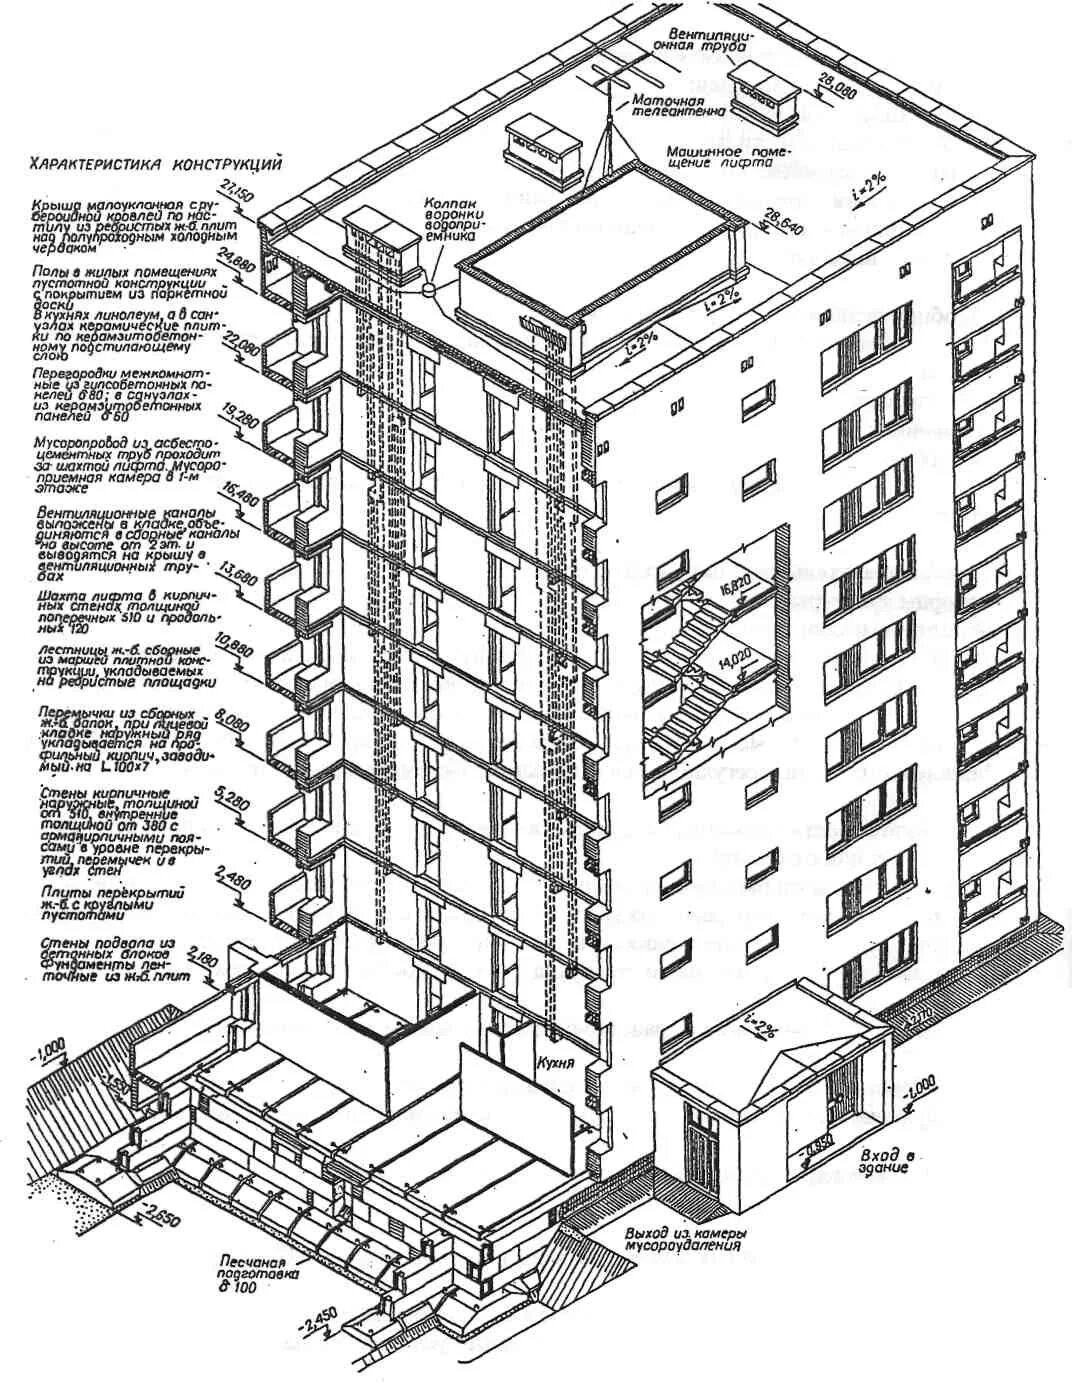 В зависимости от этажности. Конструктивная схема многоэтажного панельного здания. Конструктивные схемы каркасных кирпичных зданий. Конструктивная схема здания (в зависимости от этажности). Надстройка кирпичной лифтовой Шахты.